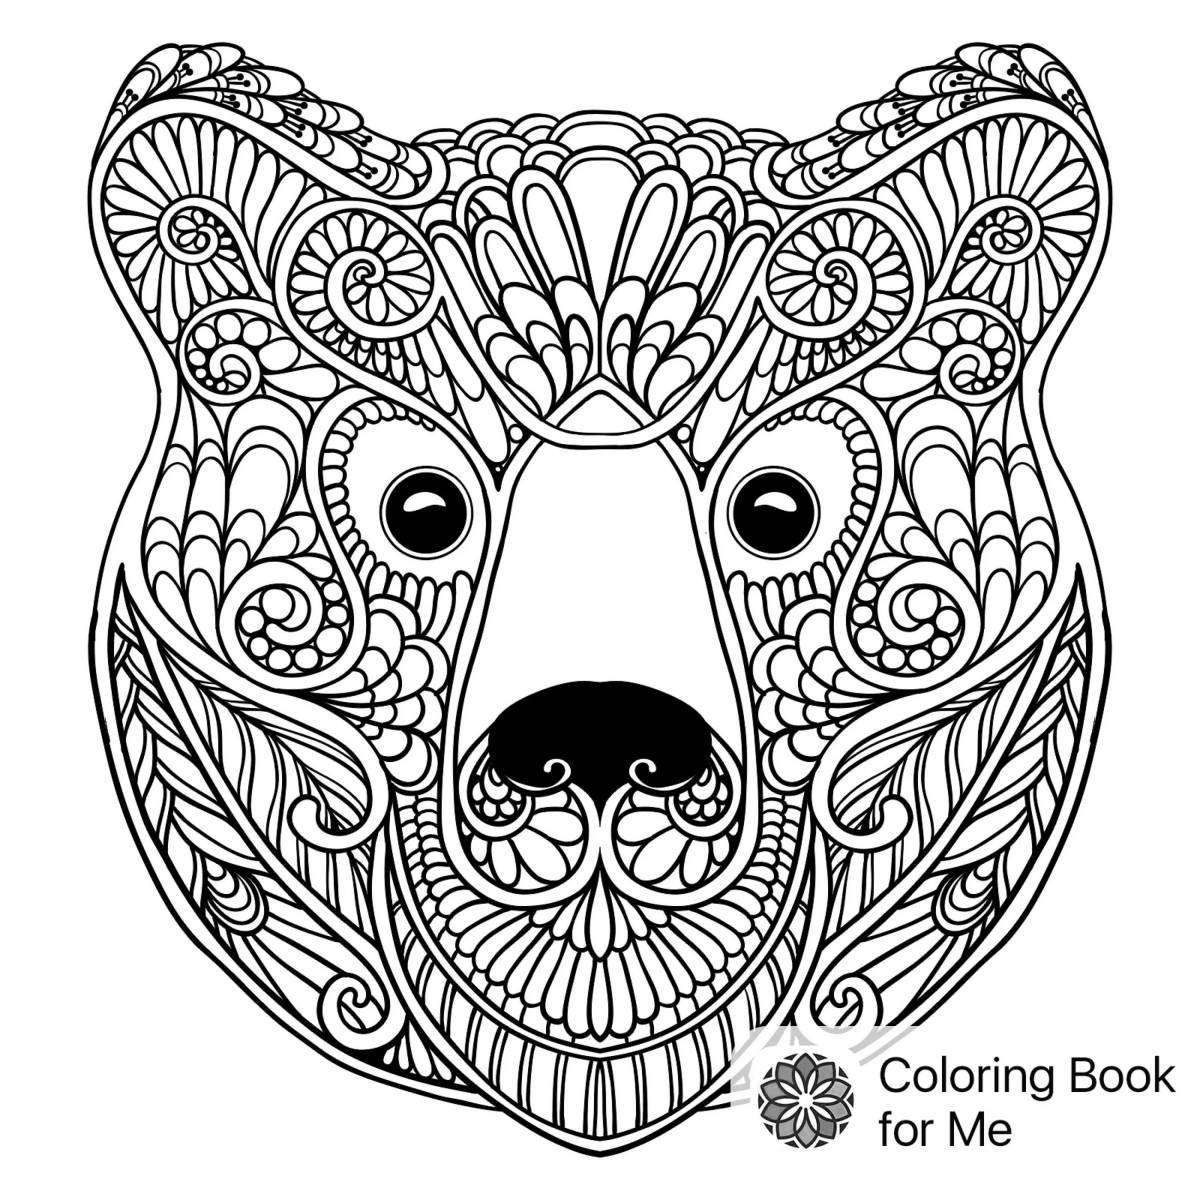 Joyful anti-stress coloring bear